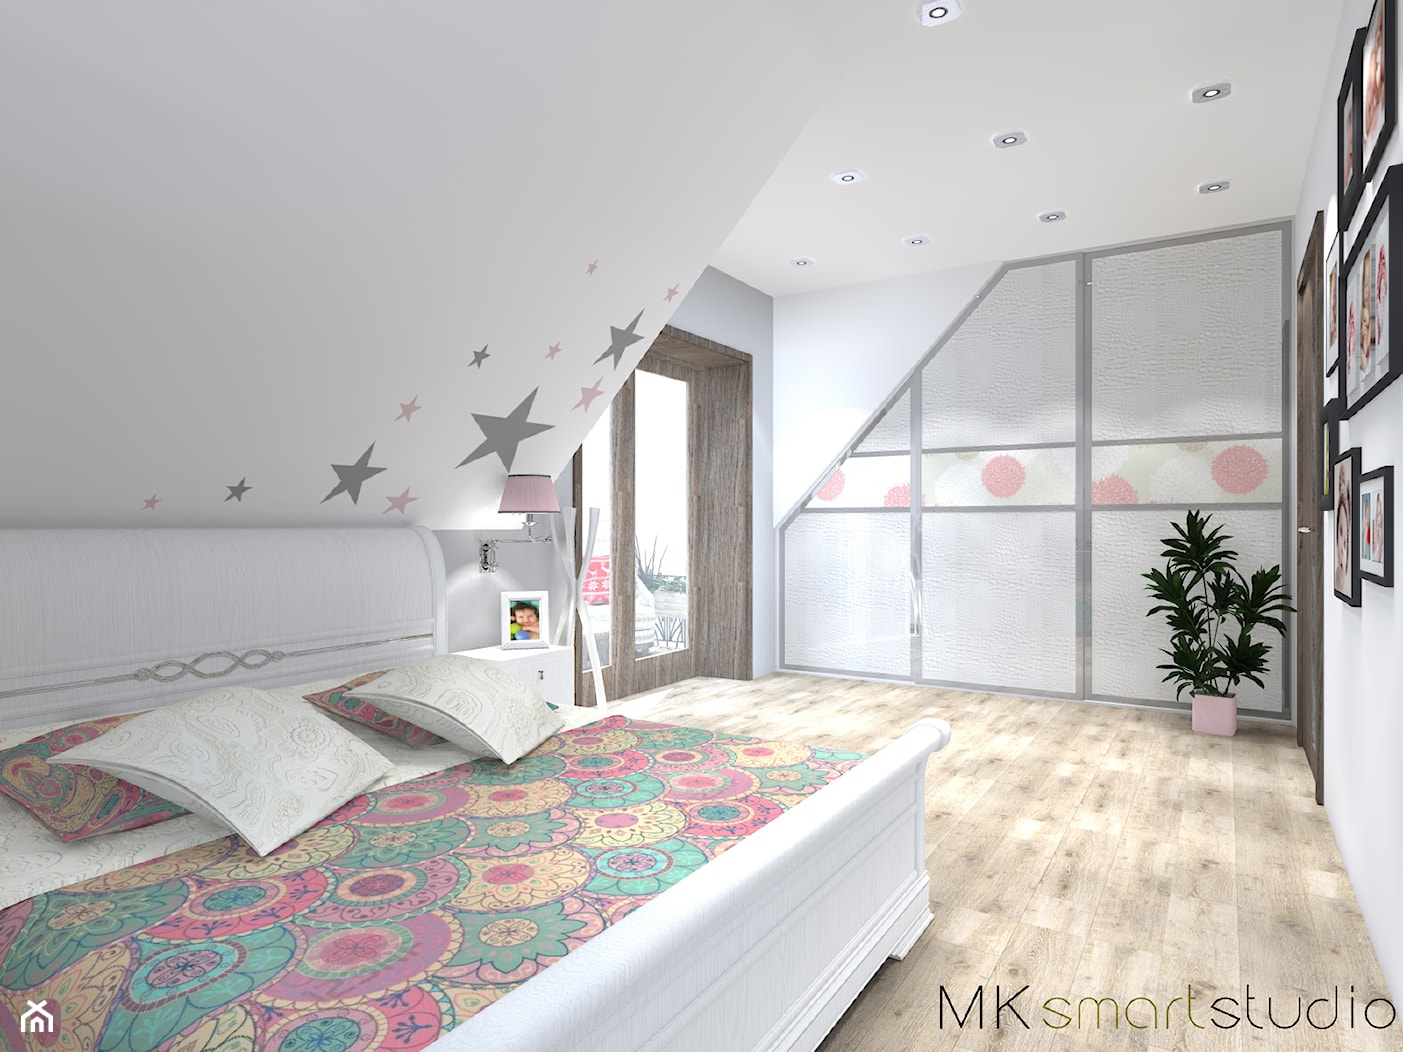 Sypialnia połączona z kącikiem dla noworodka - Sypialnia, styl skandynawski - zdjęcie od MKsmartstudio - Homebook